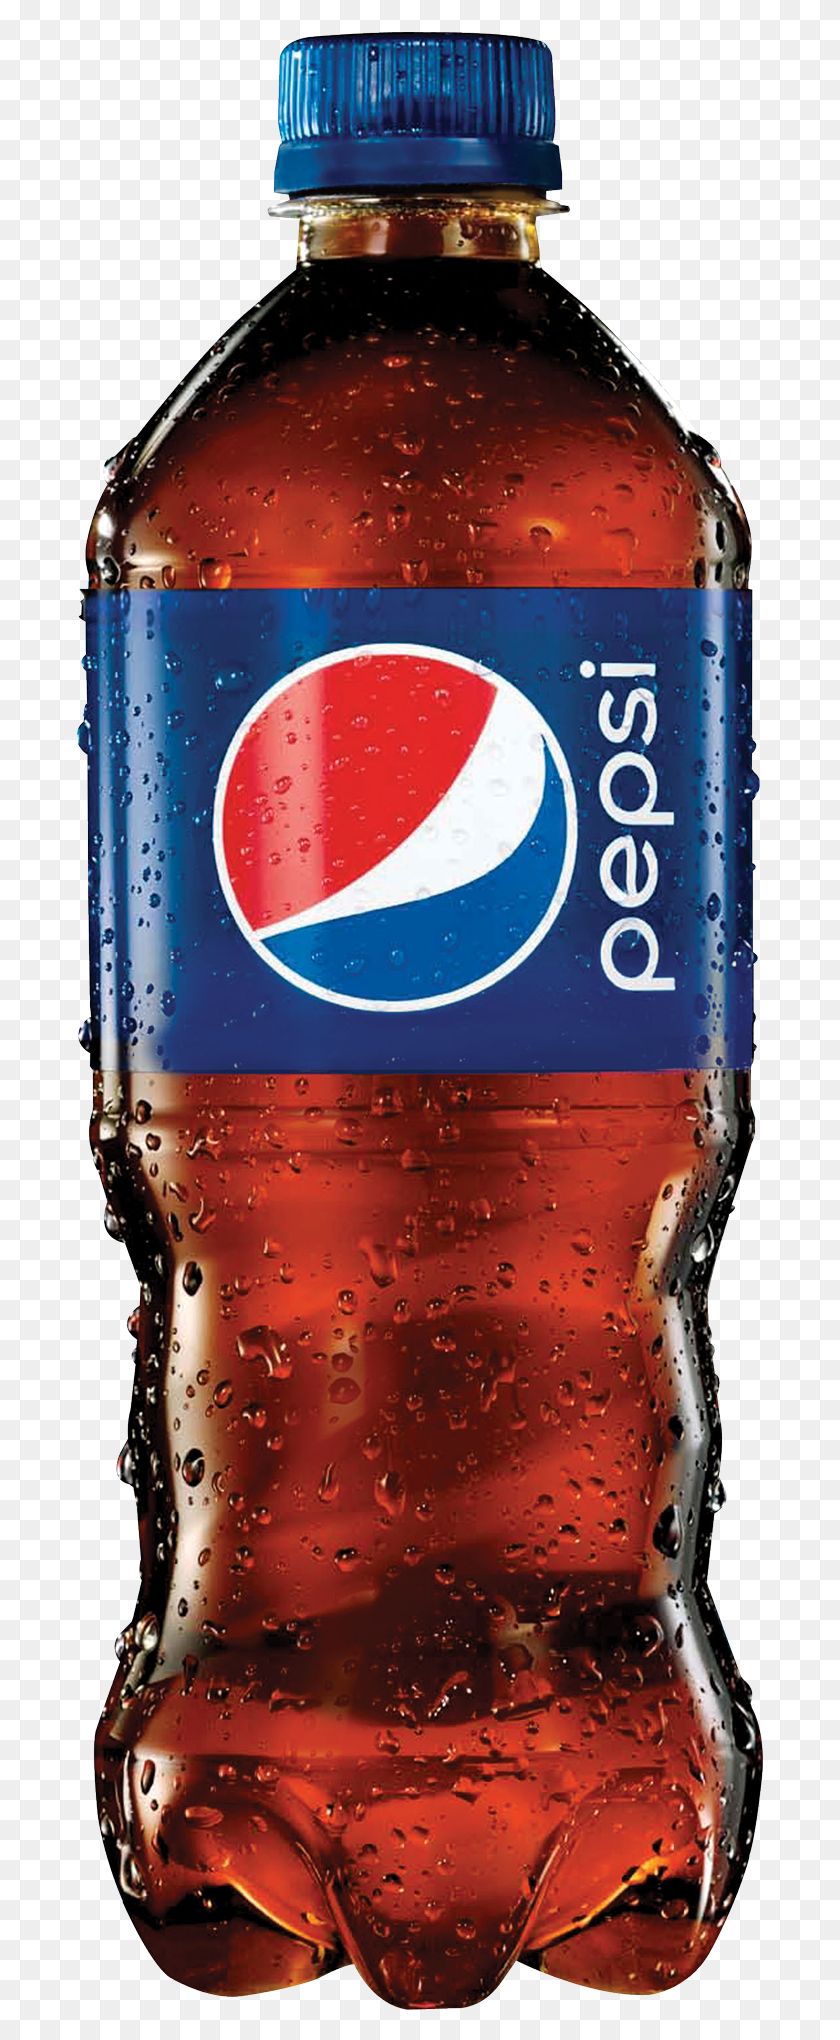 689x1980 Descargar Png / Pepsi Image Botella De Pepsi 2017, Soda, Bebida, Bebida Hd Png